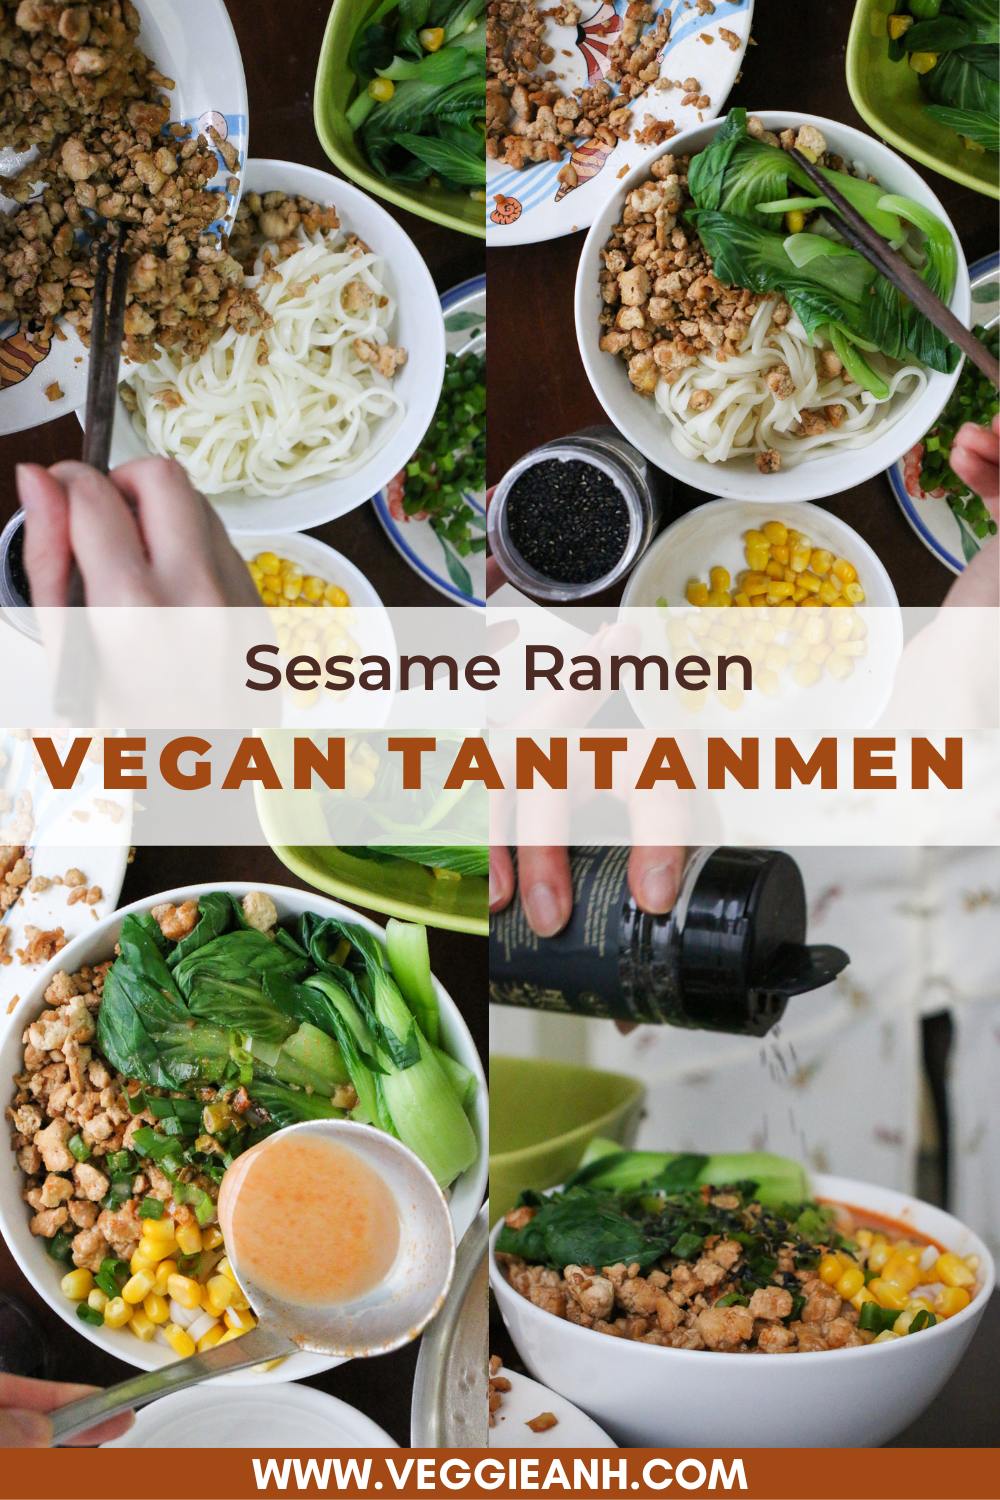 Assemble the vegan Tantanmen